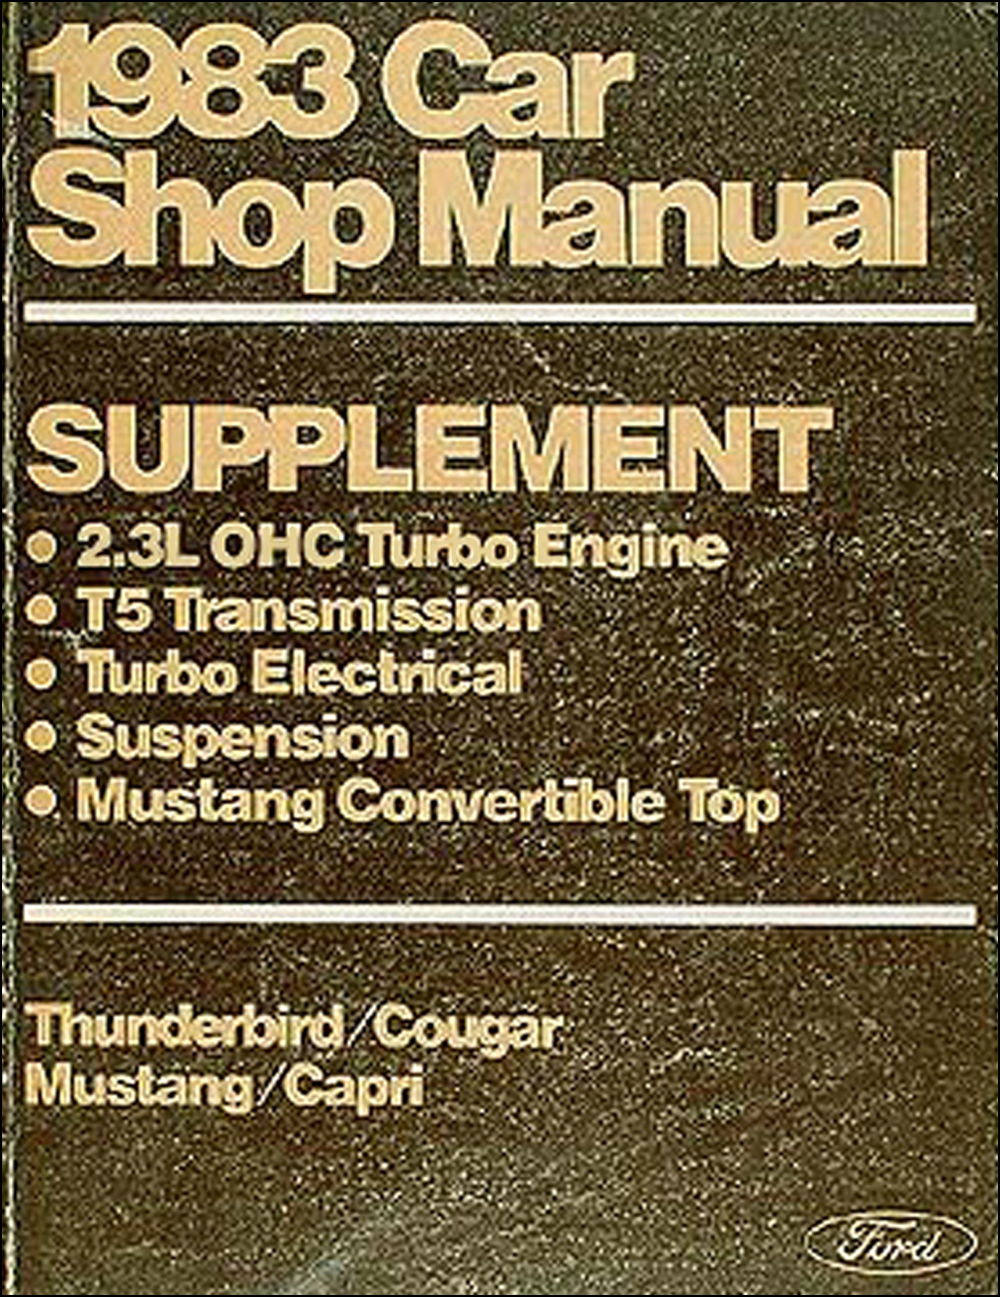 1983 Mustang T bird Cougar Capri Turbo Engine/Convertible/Susp. Repair Shop Manual Supp.